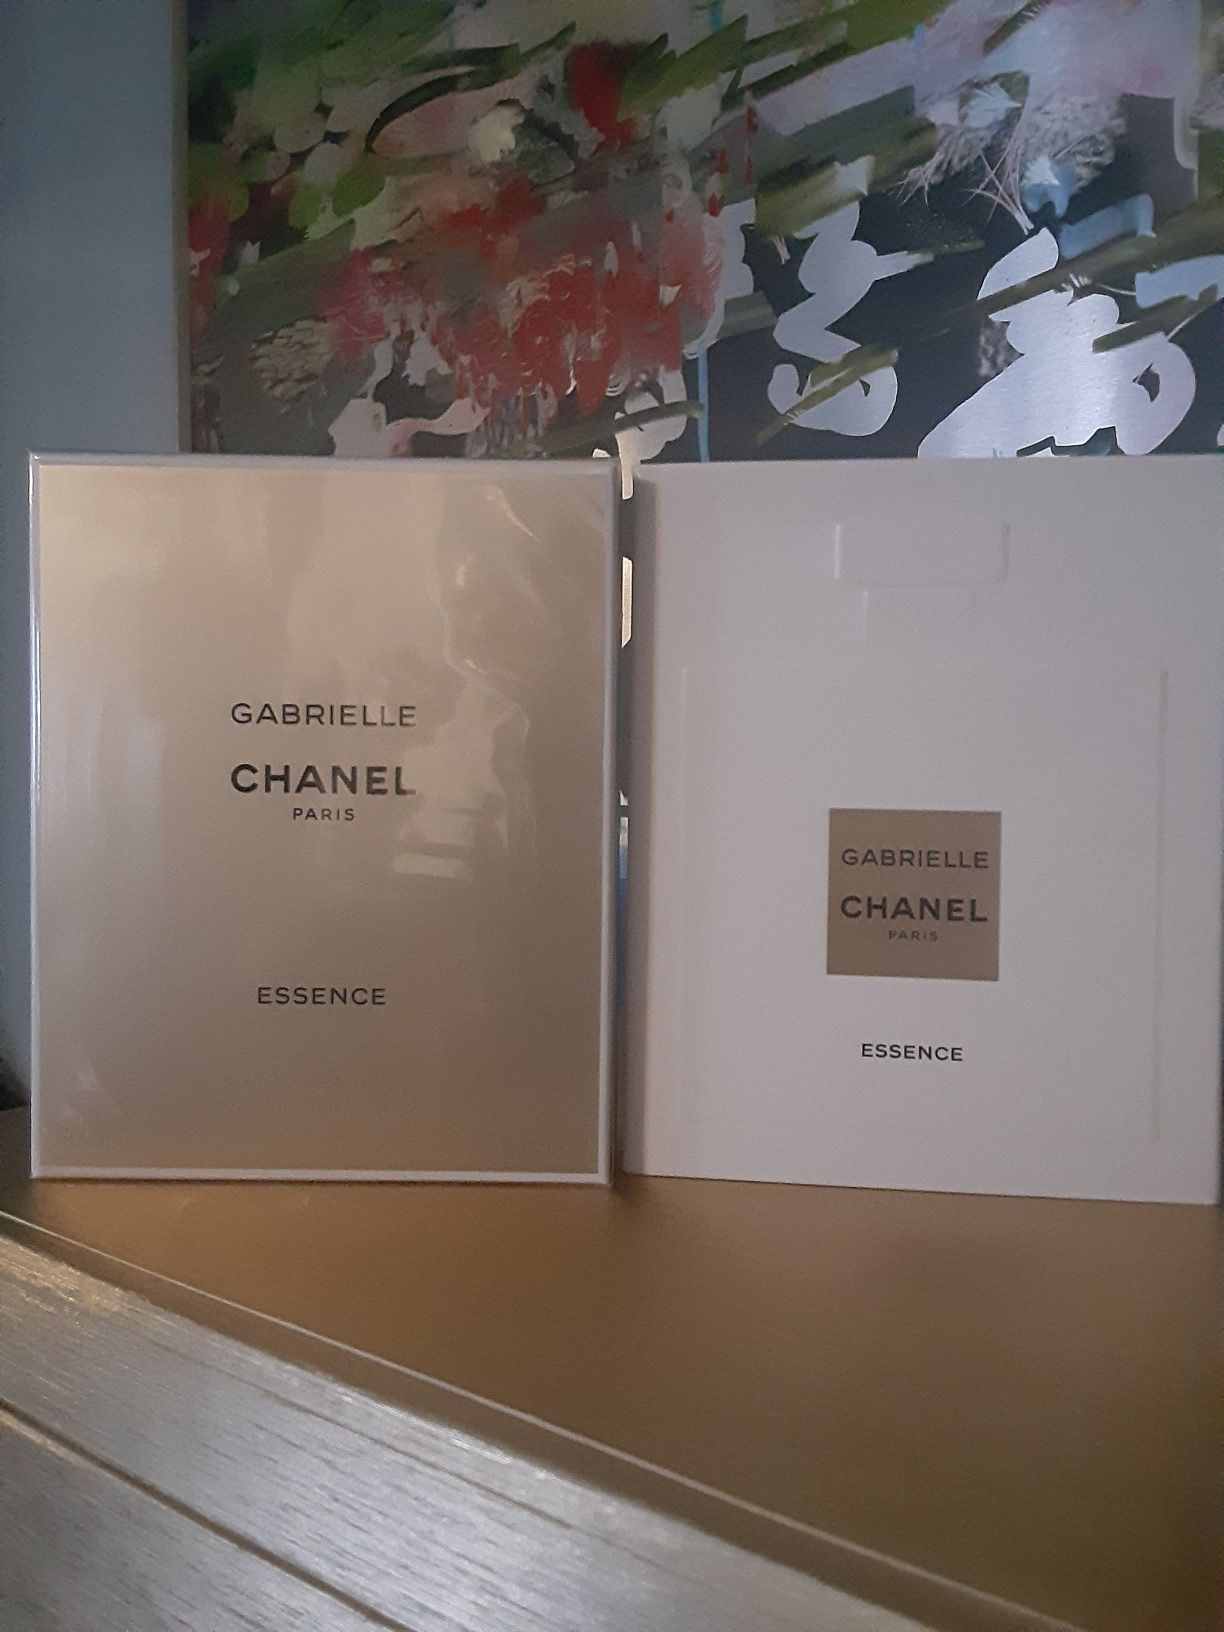 Gabrielle Chanel perfume